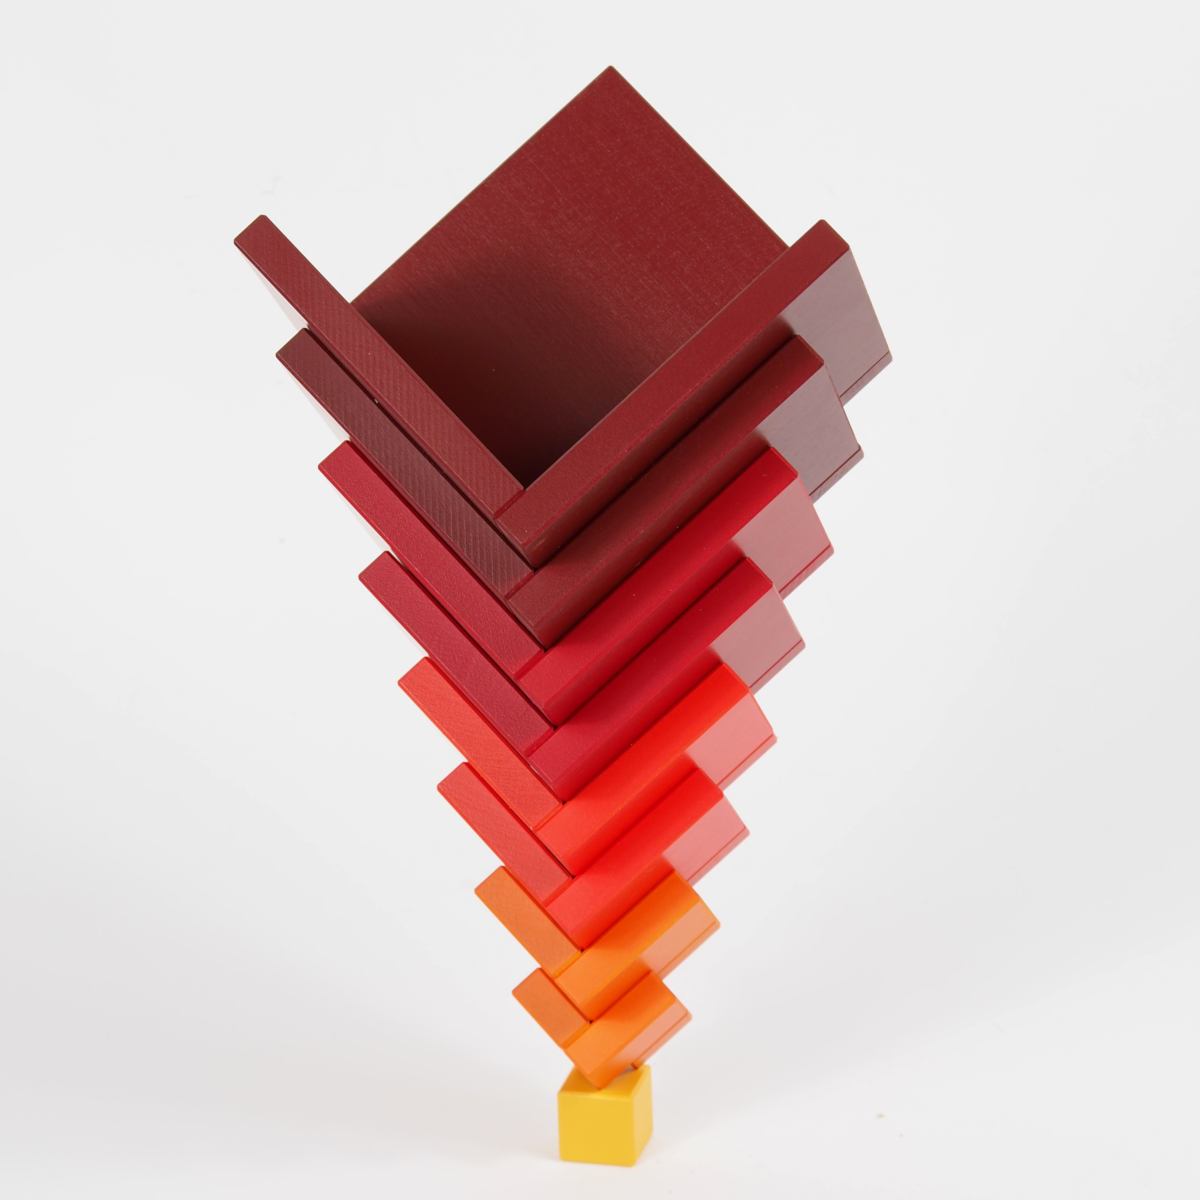 Cella (Rot) – Originales Naef-Spiel aus Holz für kreative Konstruktionen